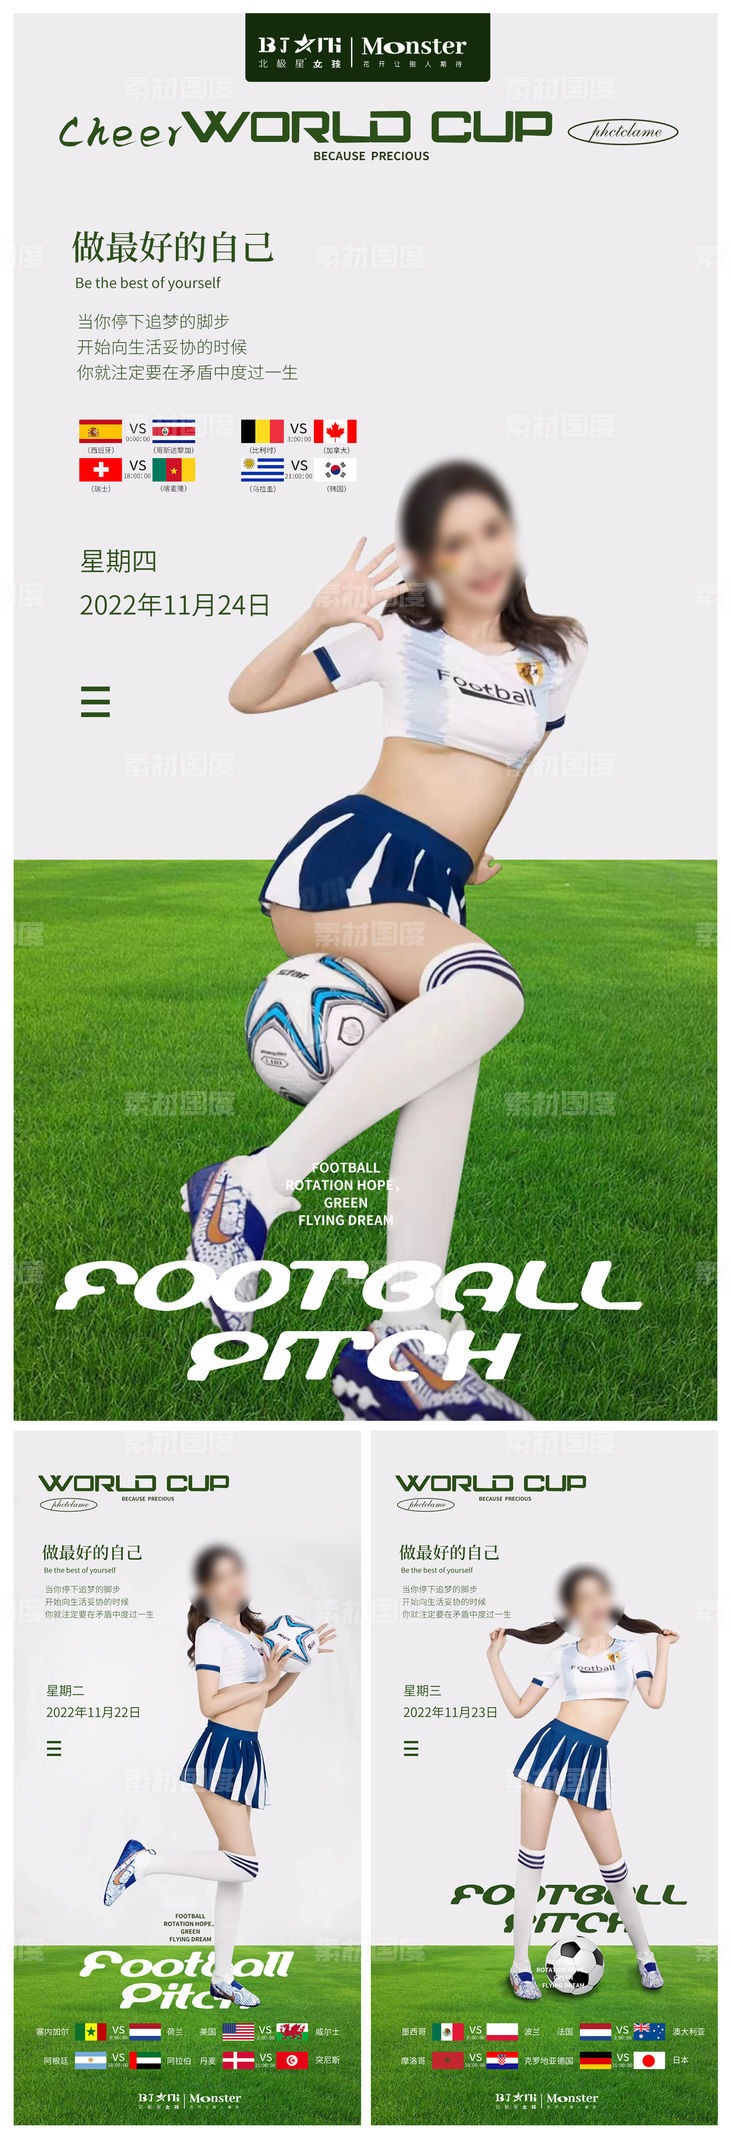 医美整形世界杯美女足球宝贝赛程海报